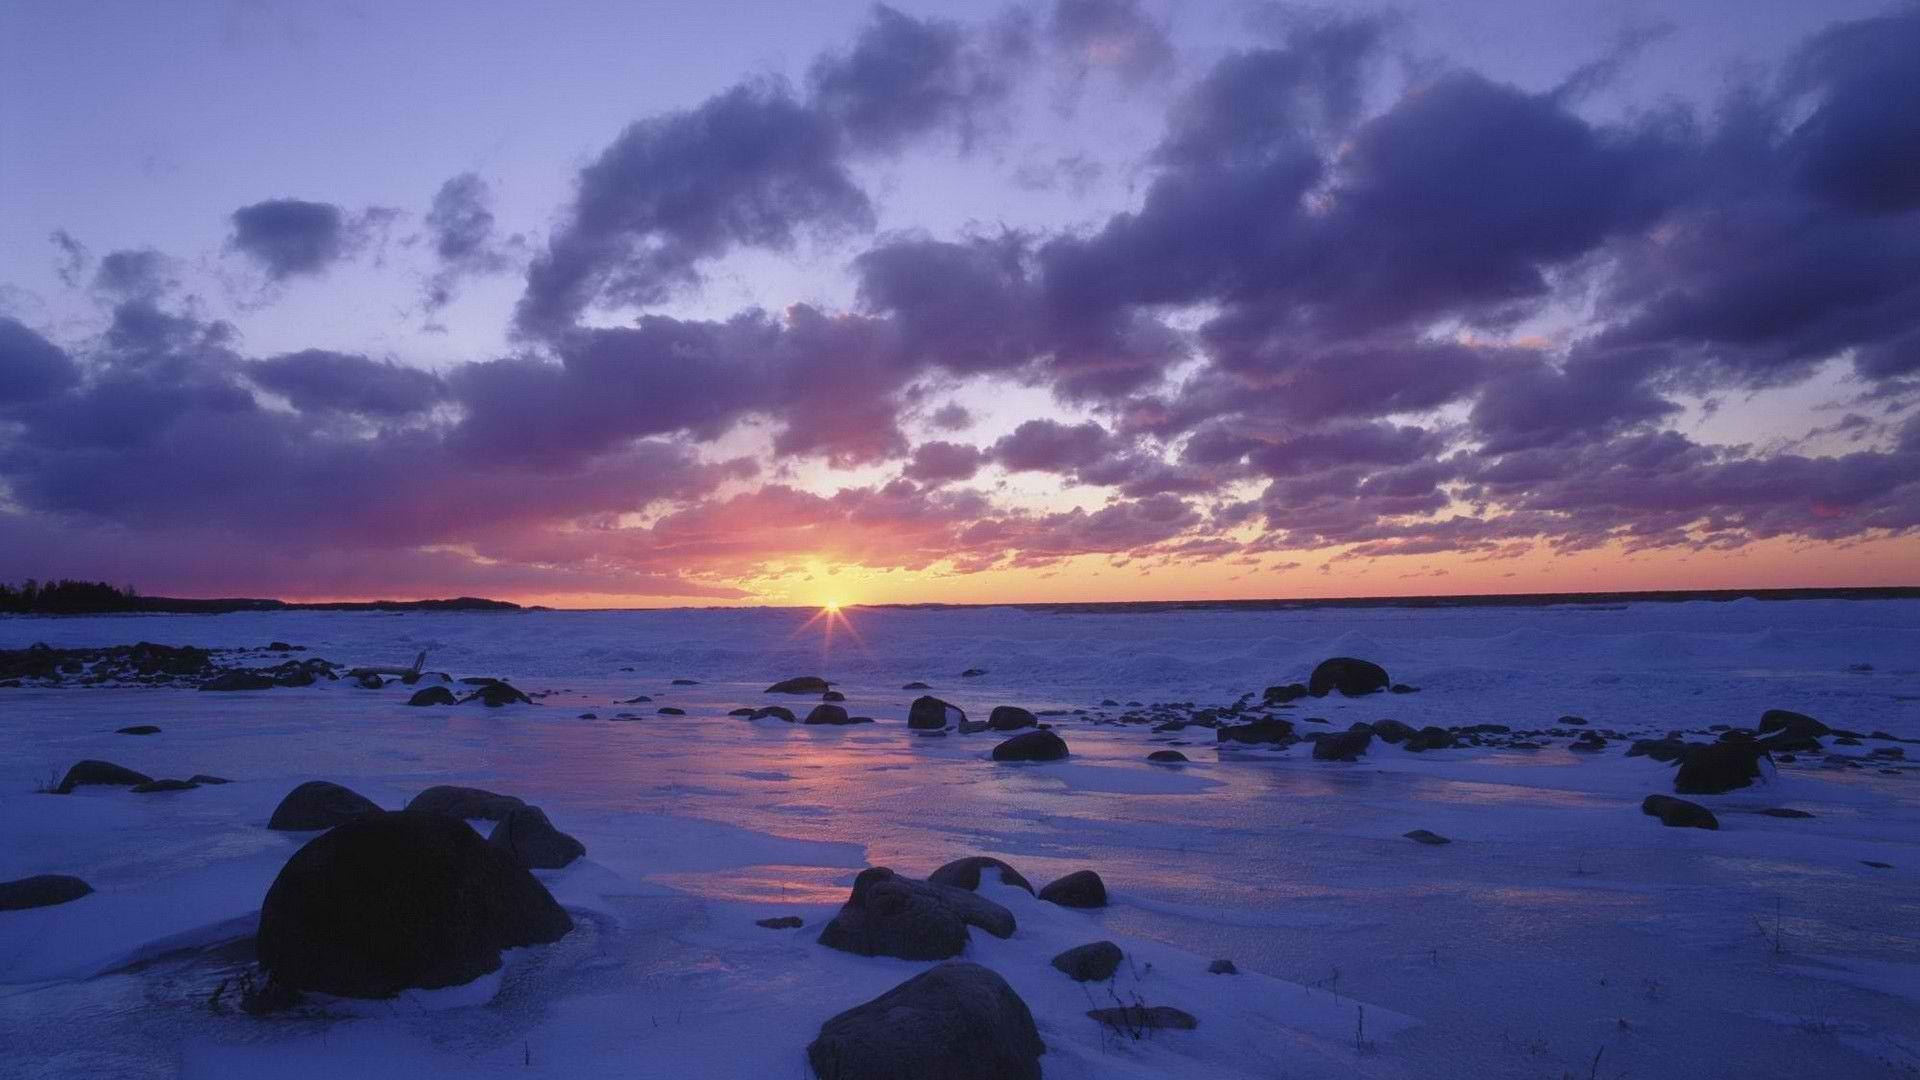 The Image of Sunset Winter (season) World Lake Michigan 1920x1080